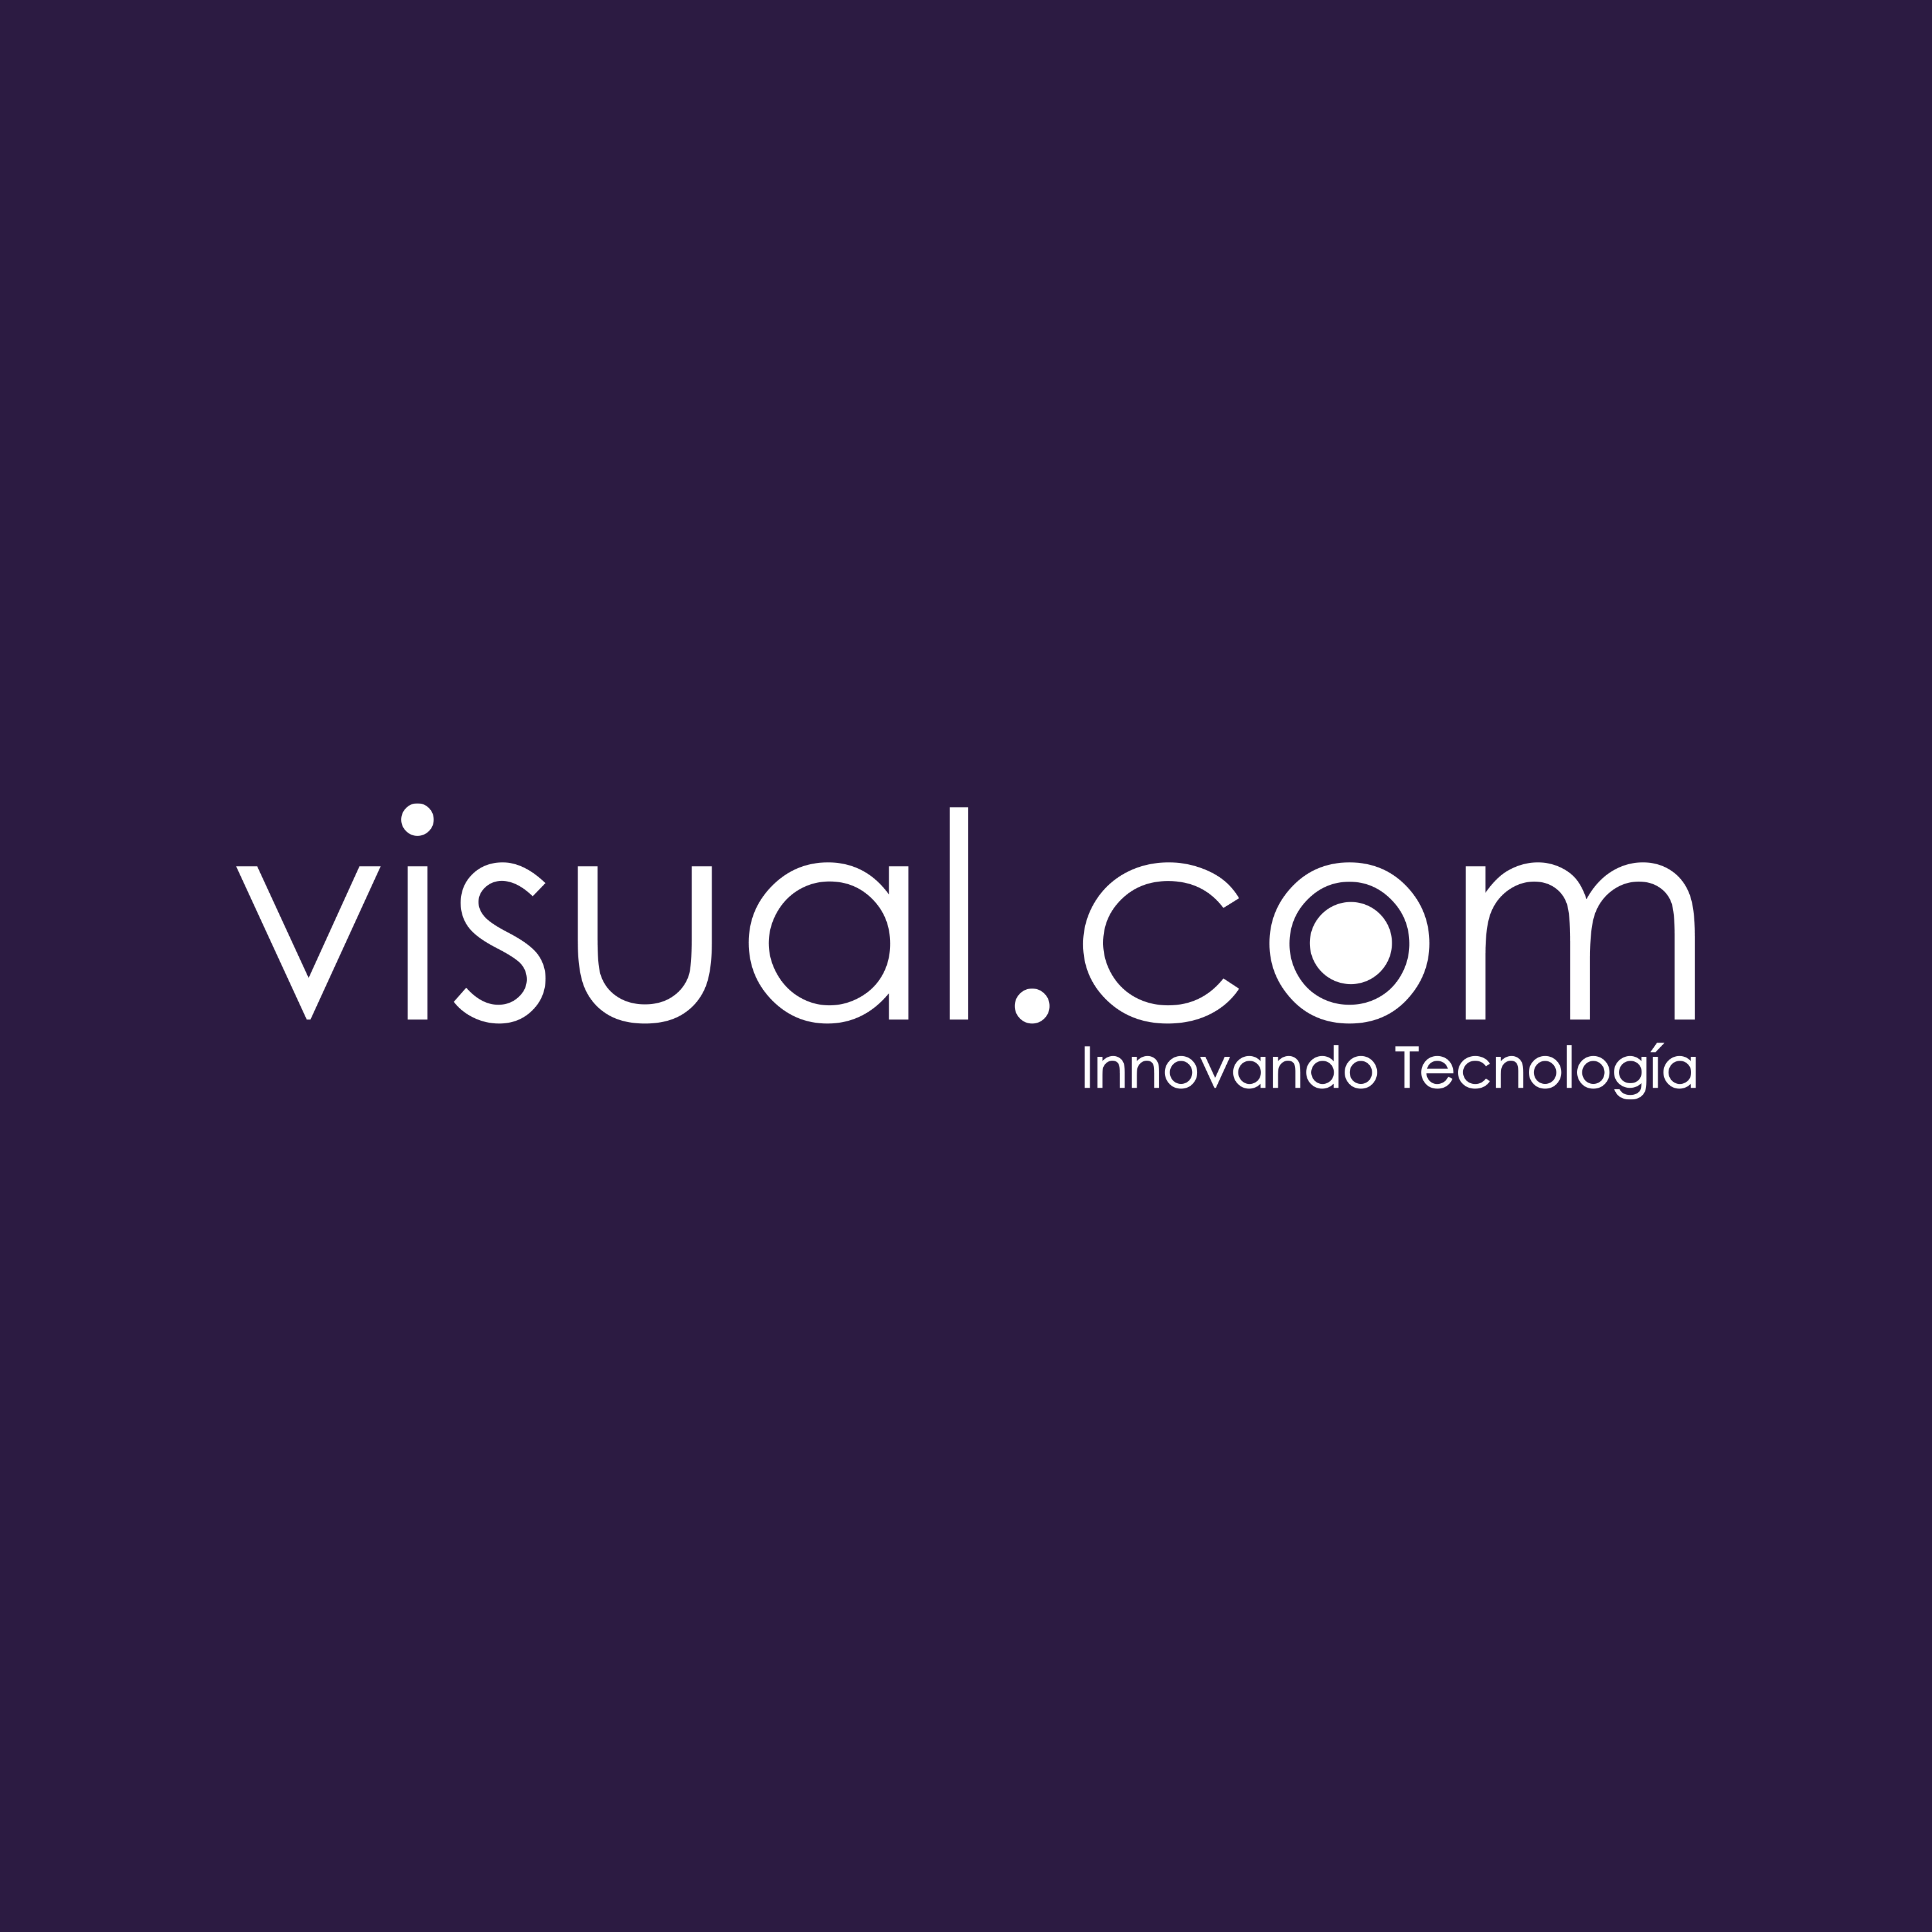 Visual.com